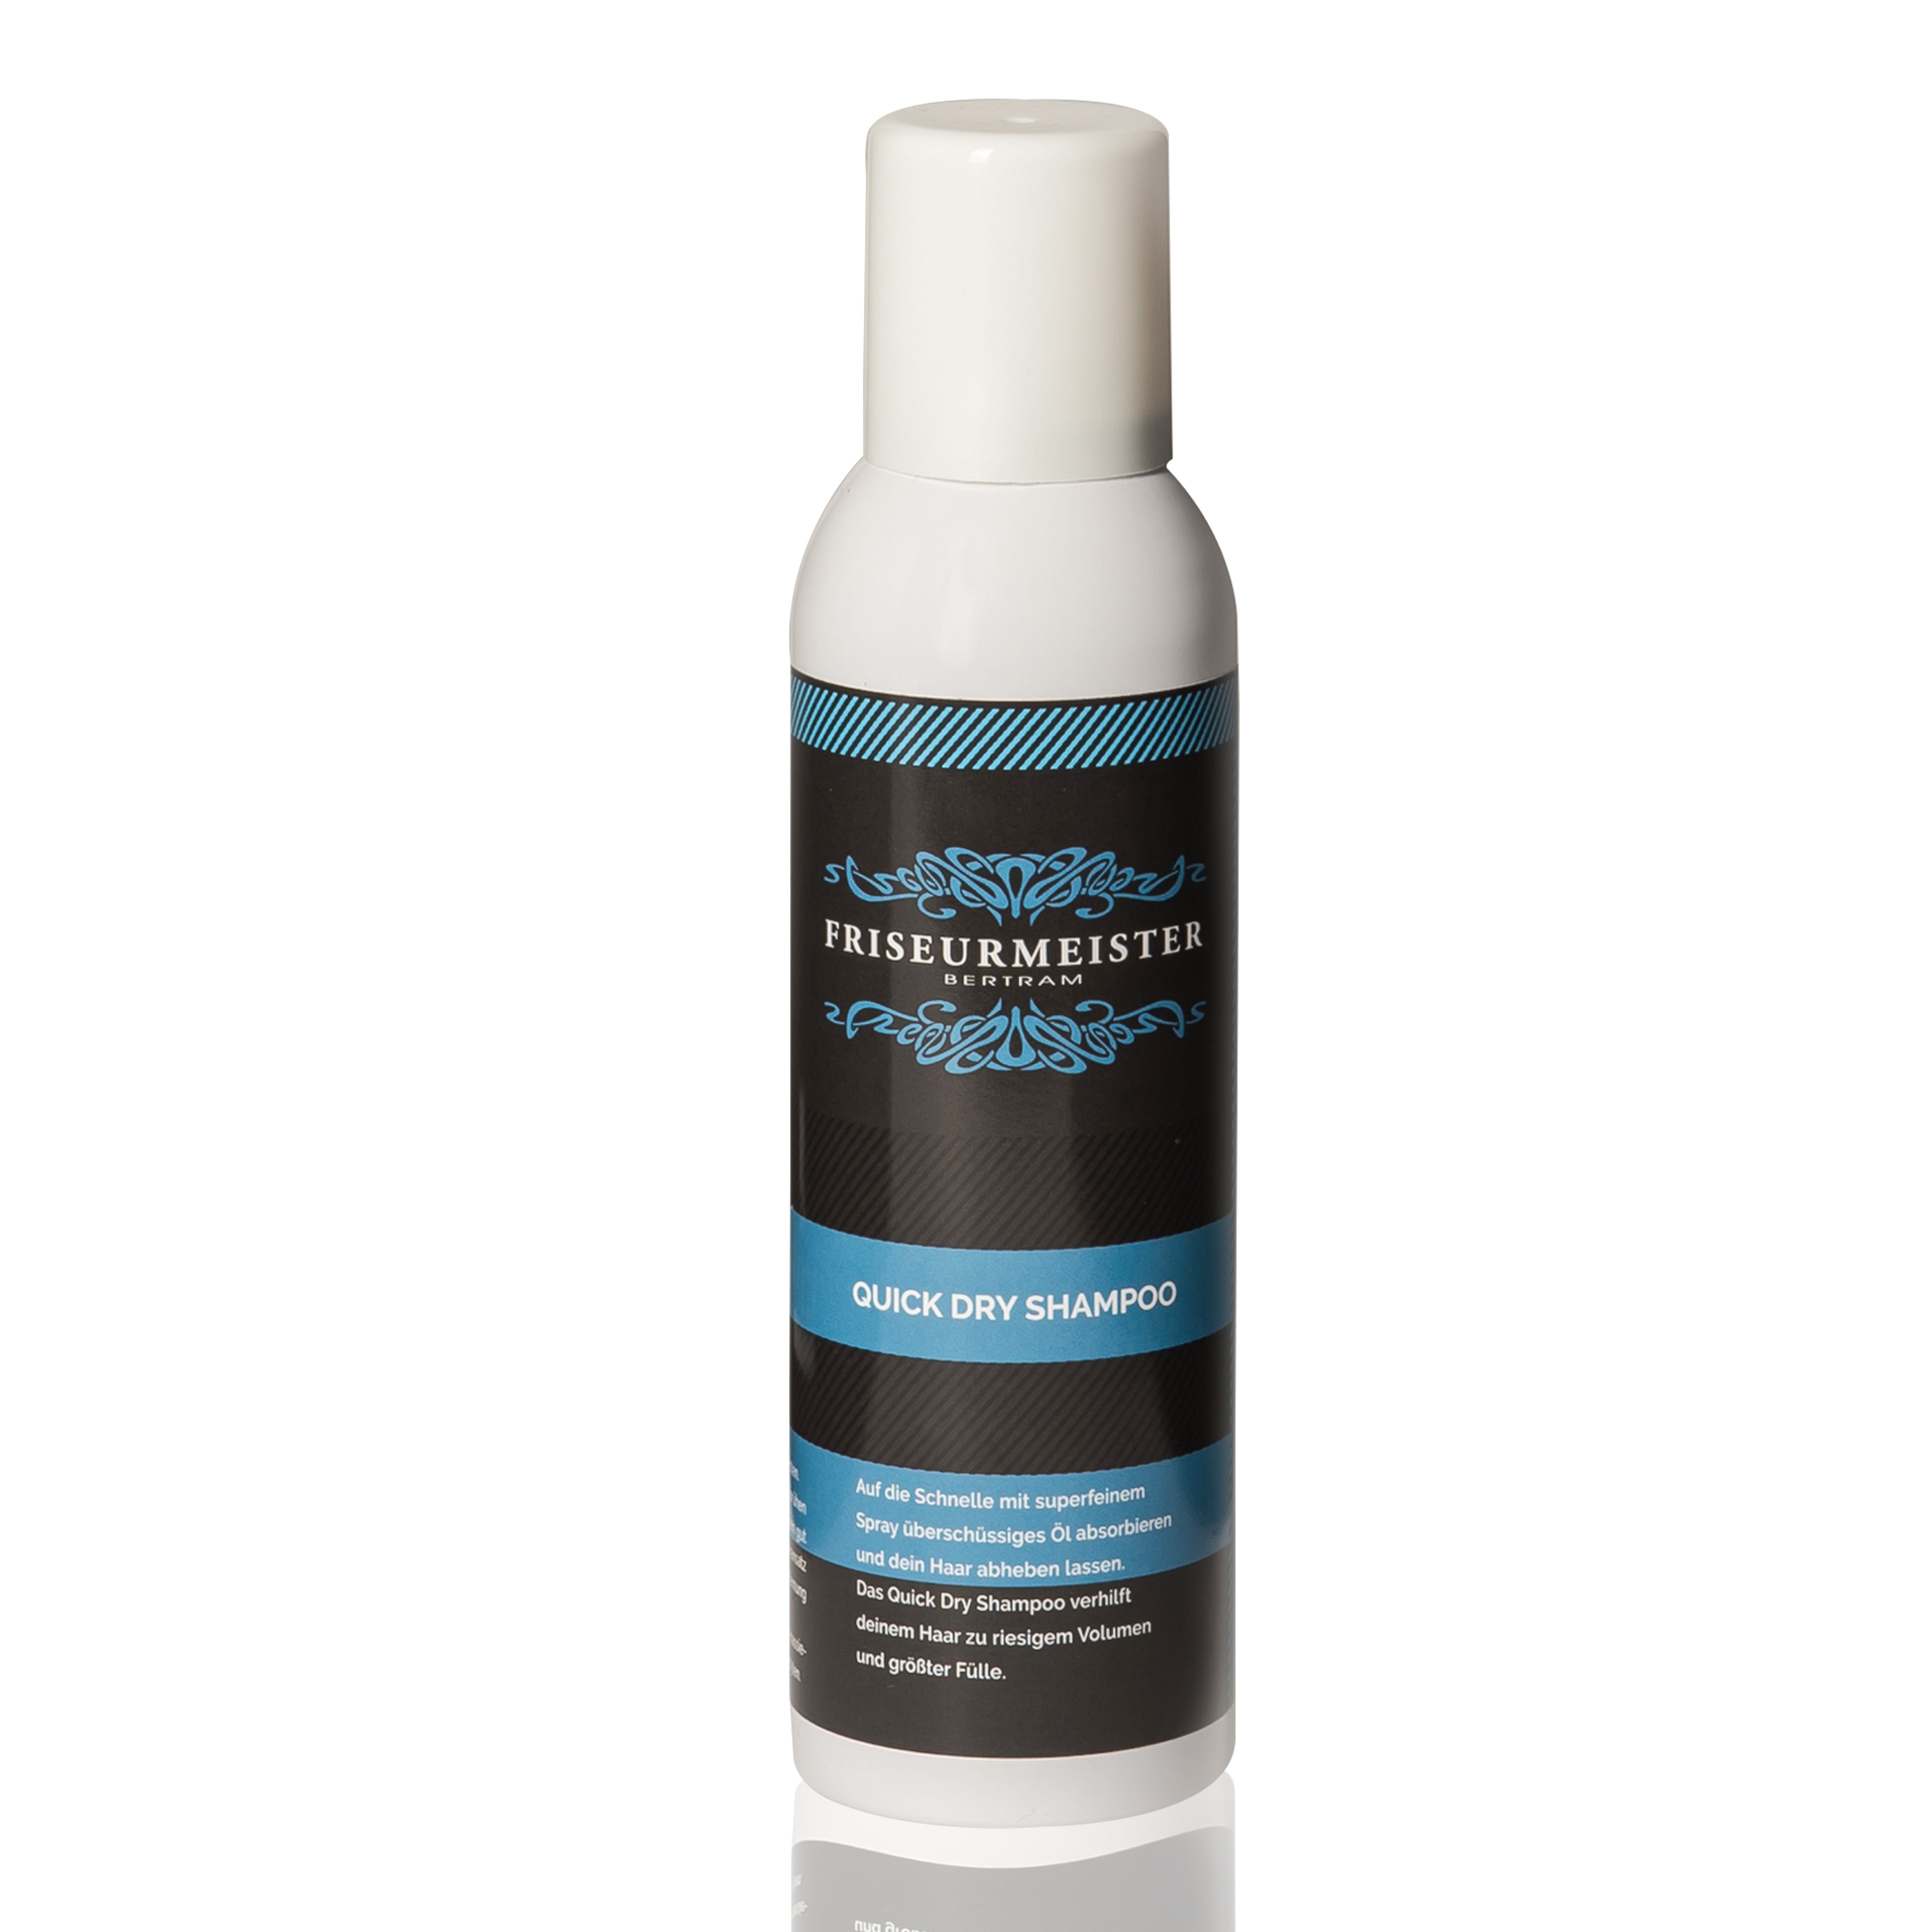 Shampoo Haartypen und größter Fülle riesigem Friseurmeister Quick für Alle Dry Trockenshampoo 200ml Volumen hilft